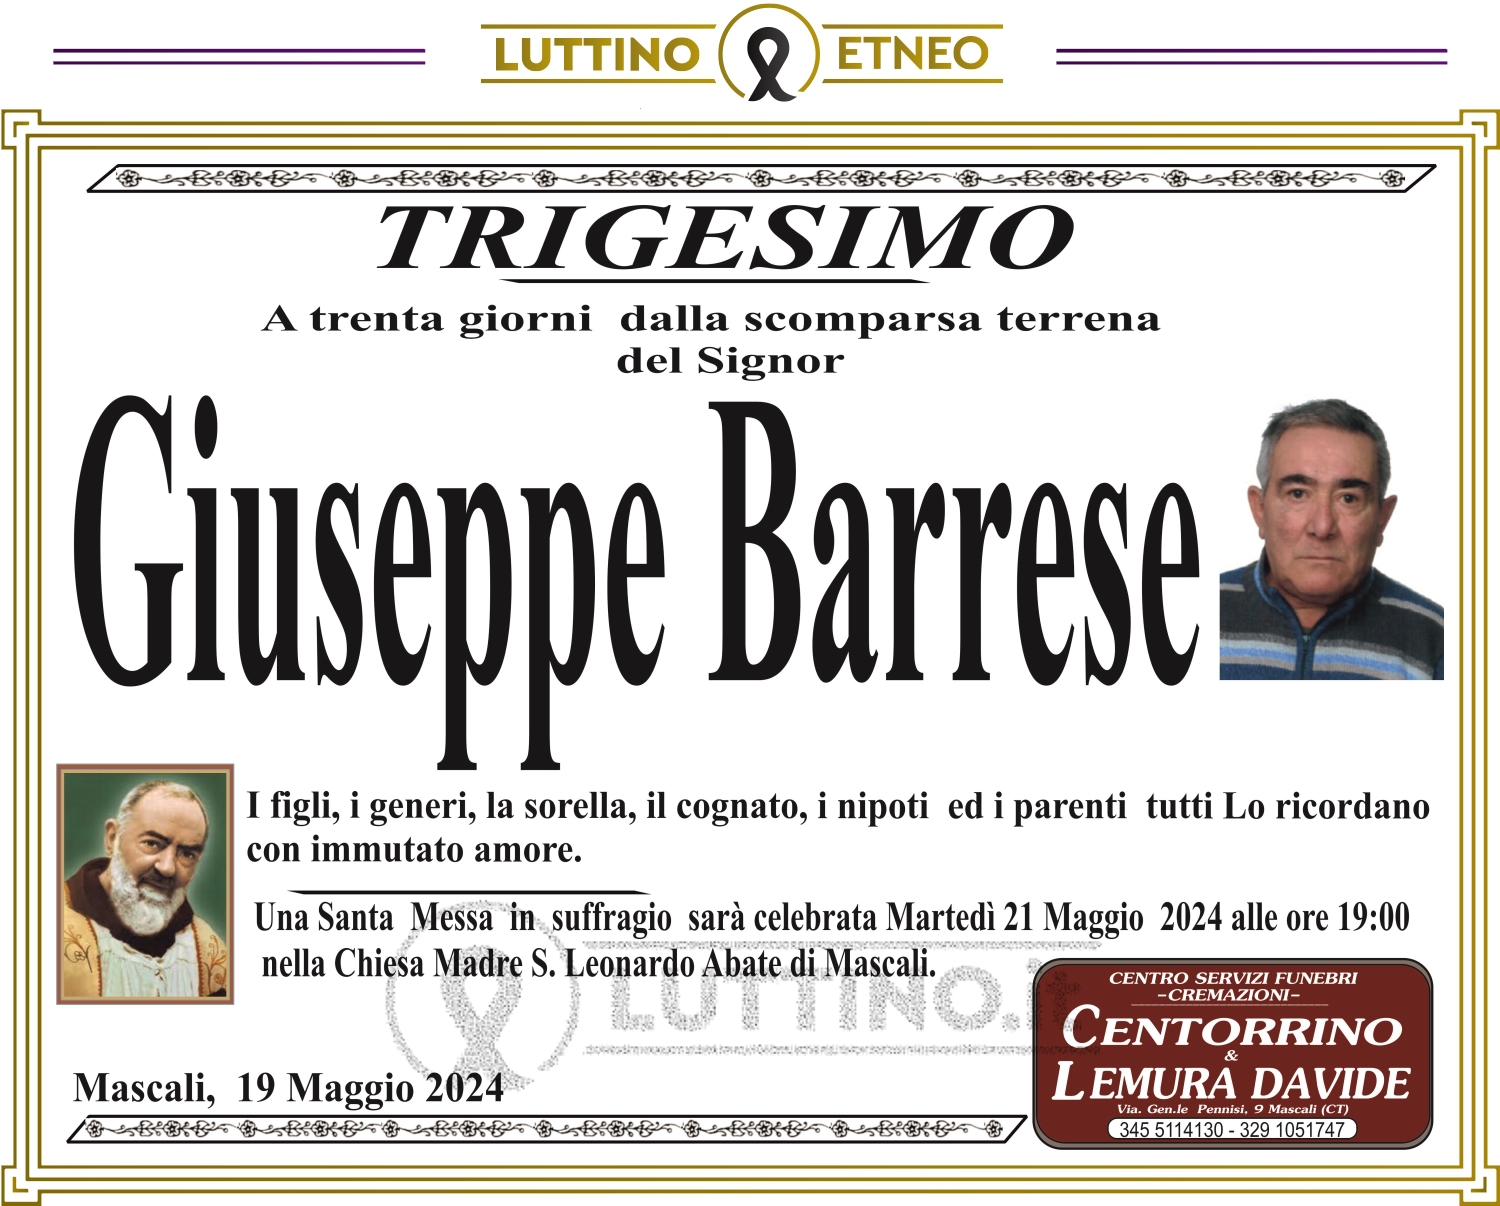 Giuseppe Barrese